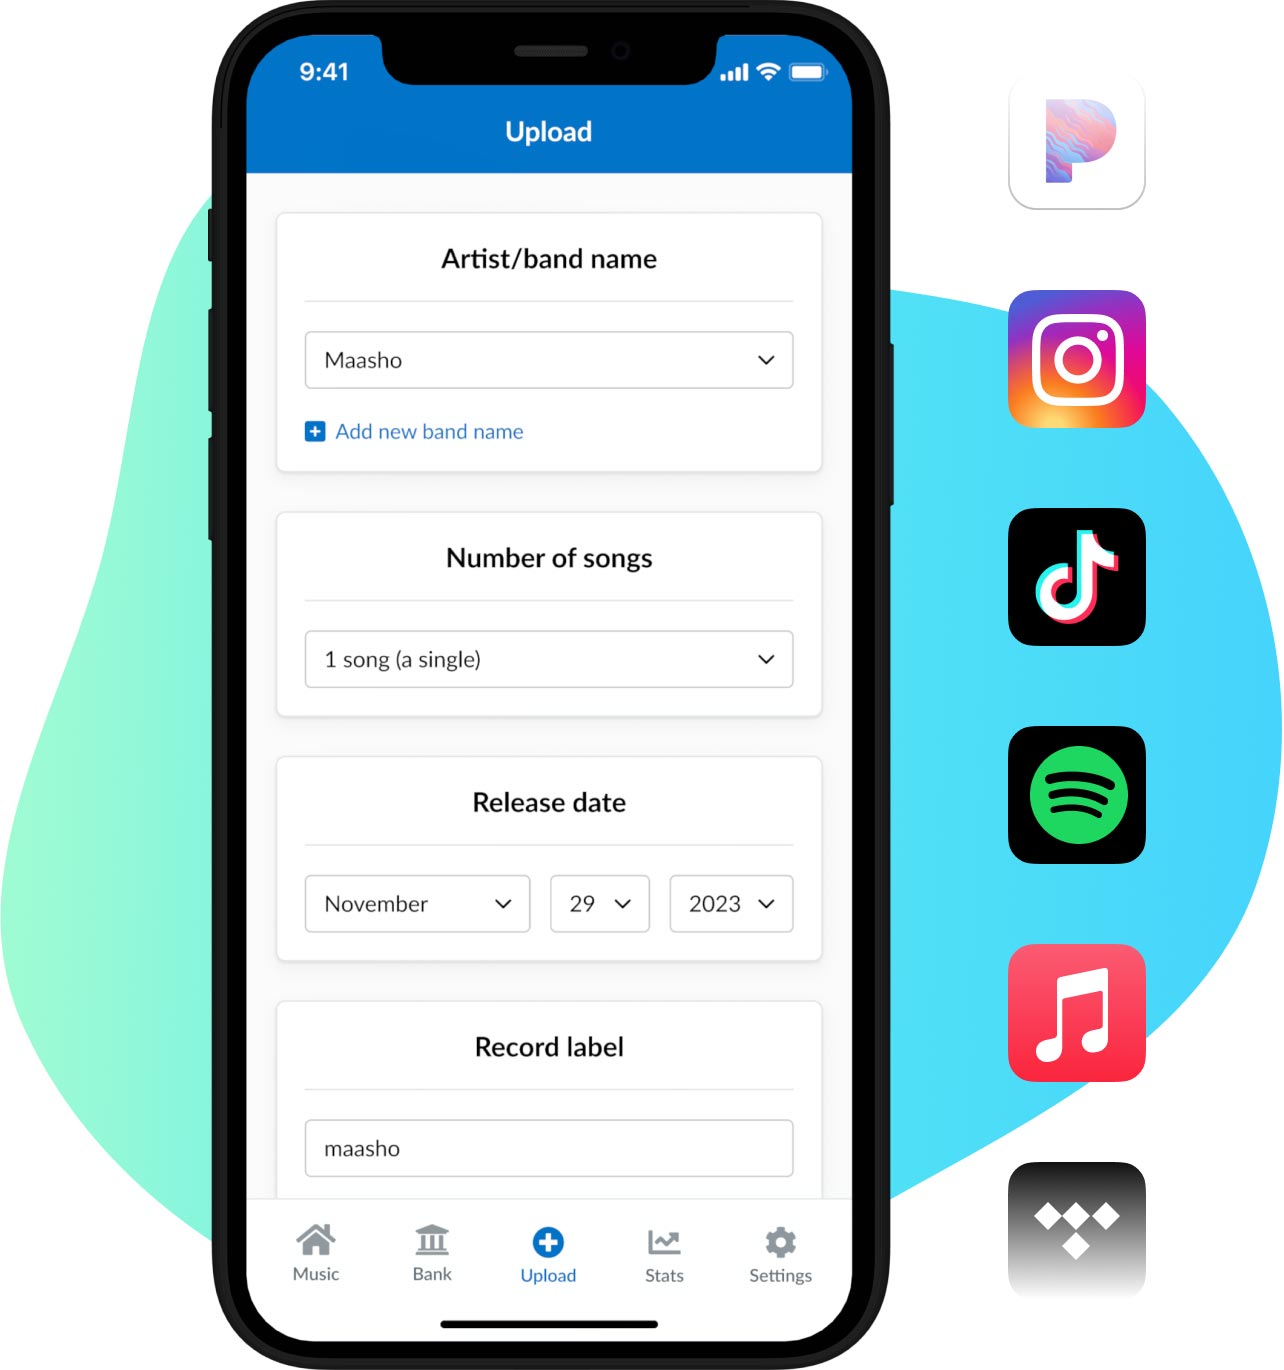 Ejemplo del formulario de subida de la aplicación de DistroKid para iPhone con una mancha azul detrás. También tiene una lista con iconos de los lugares a donde se distribuirá tu música: Pandora, Instagram, TikTok, Spotify y Apple Music